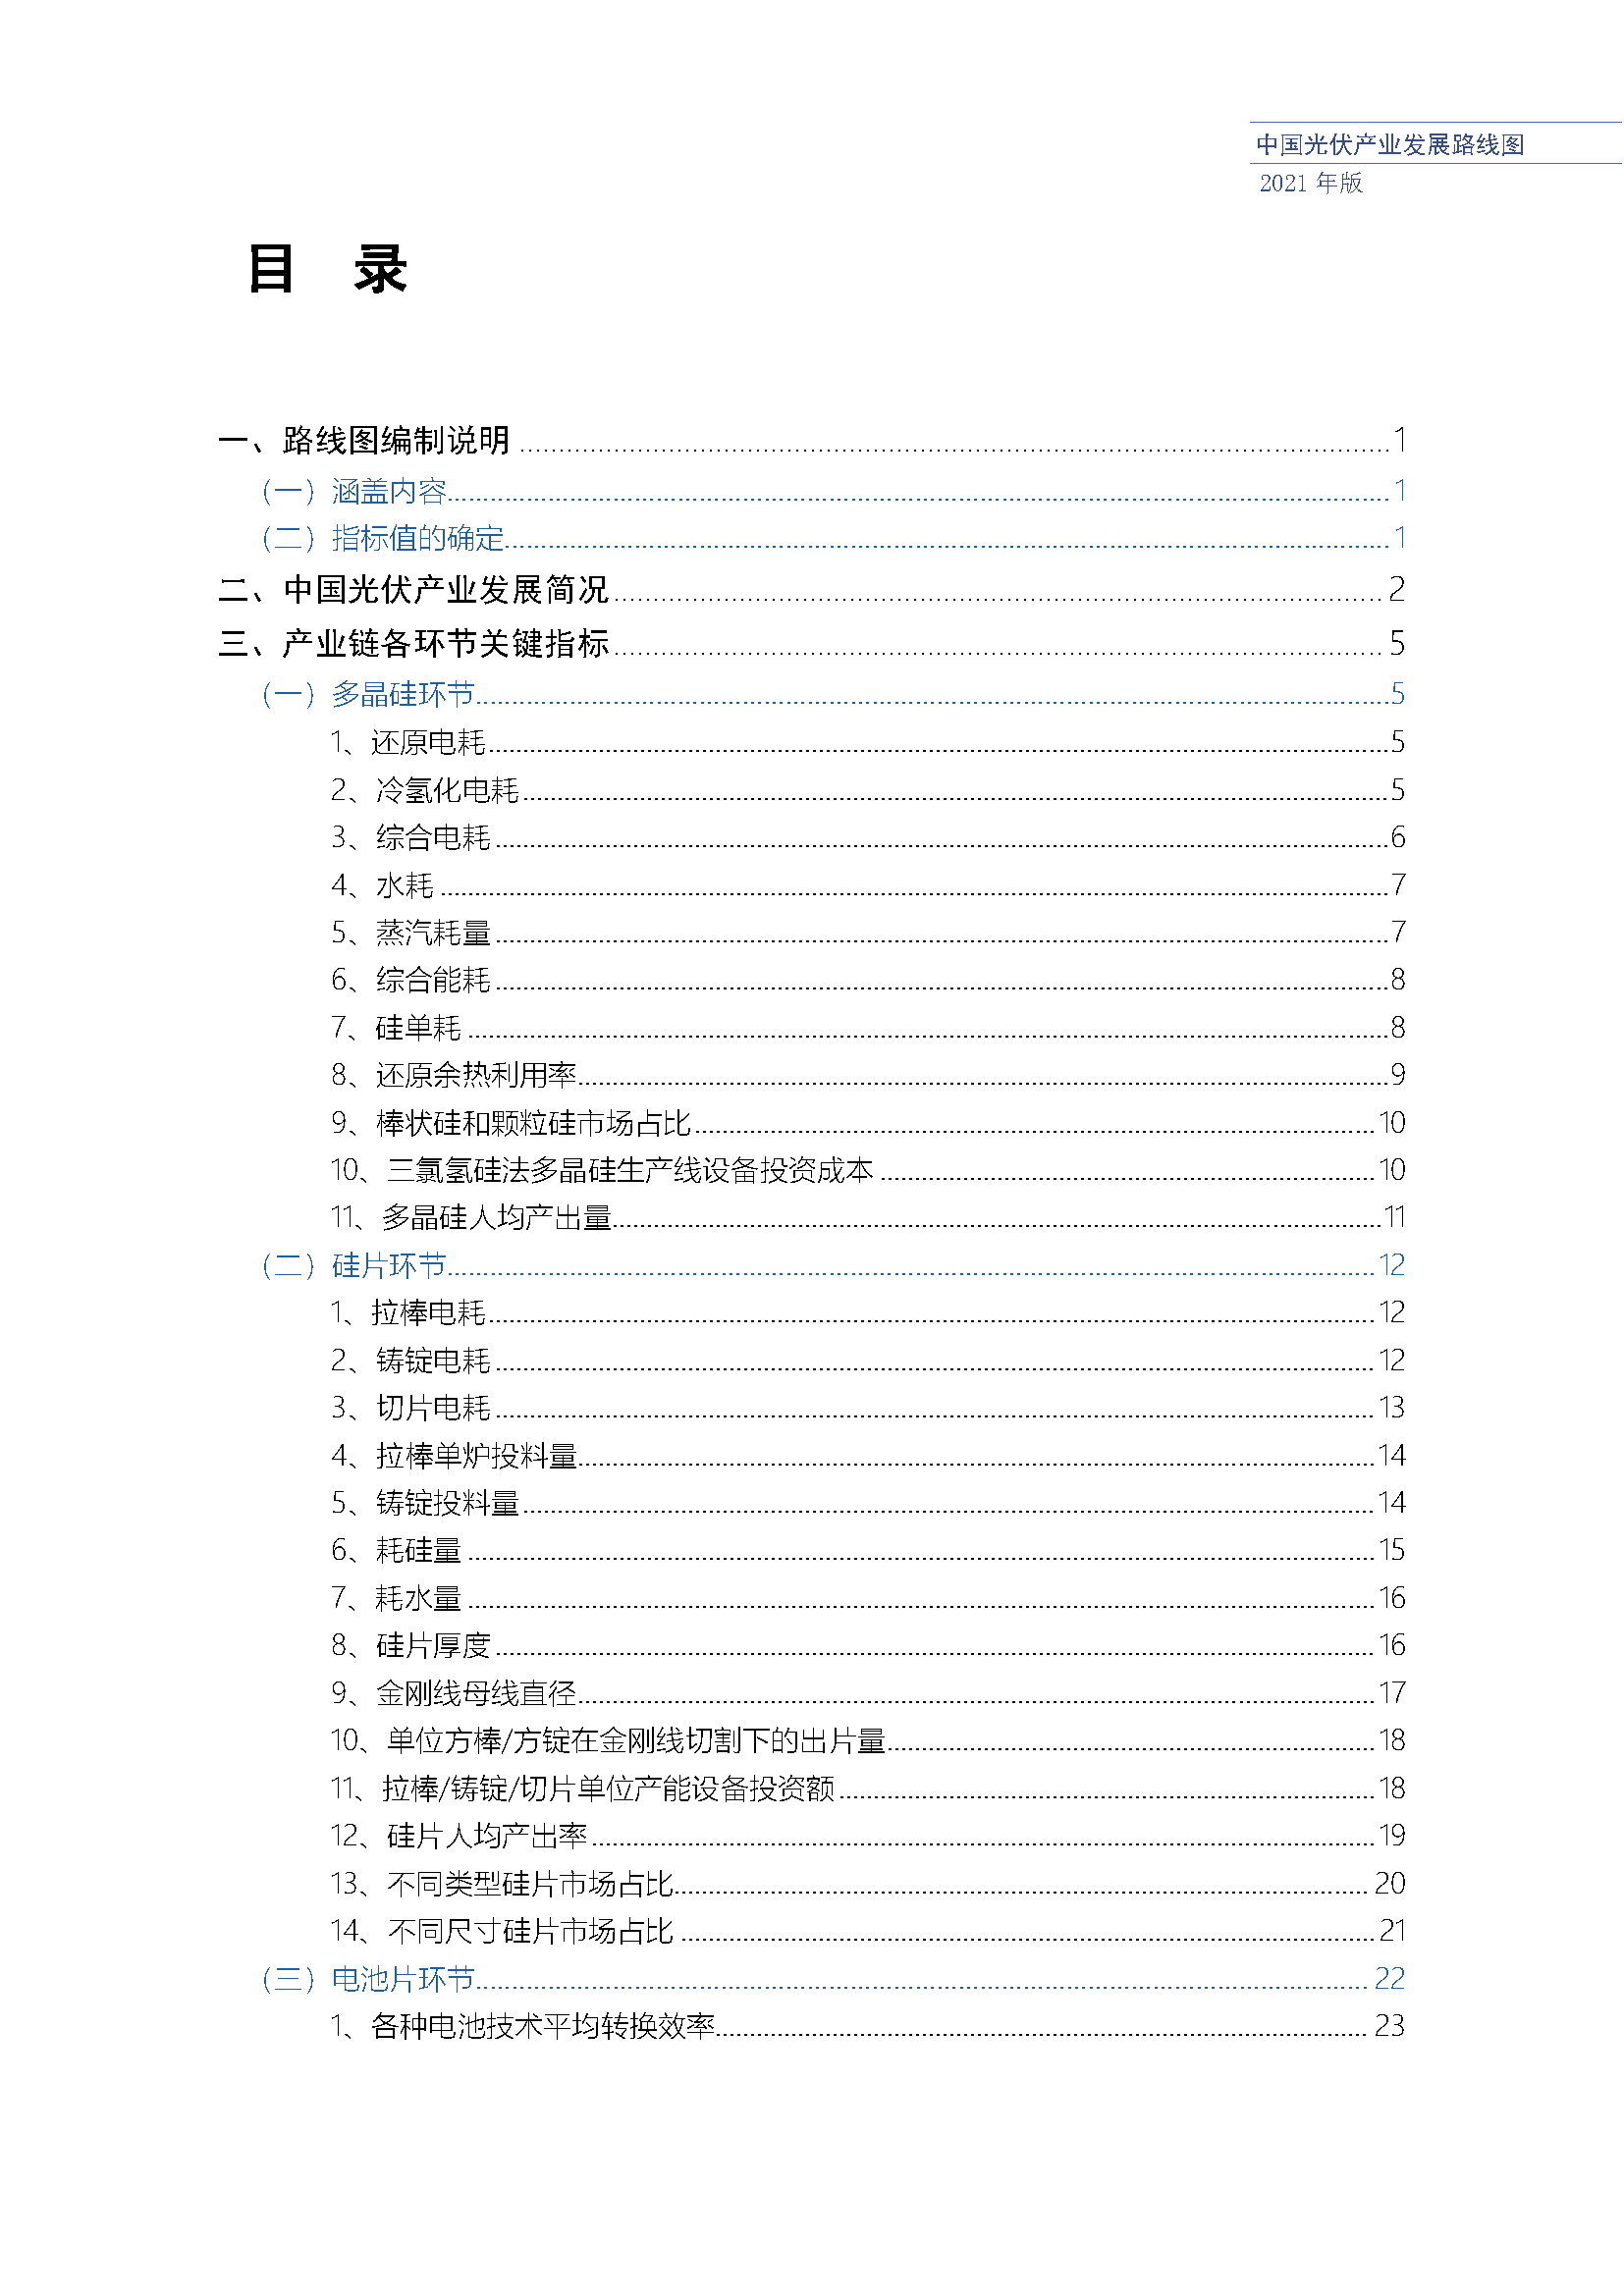 中国光伏产业发展路线图(2021年版)_页面_08.png